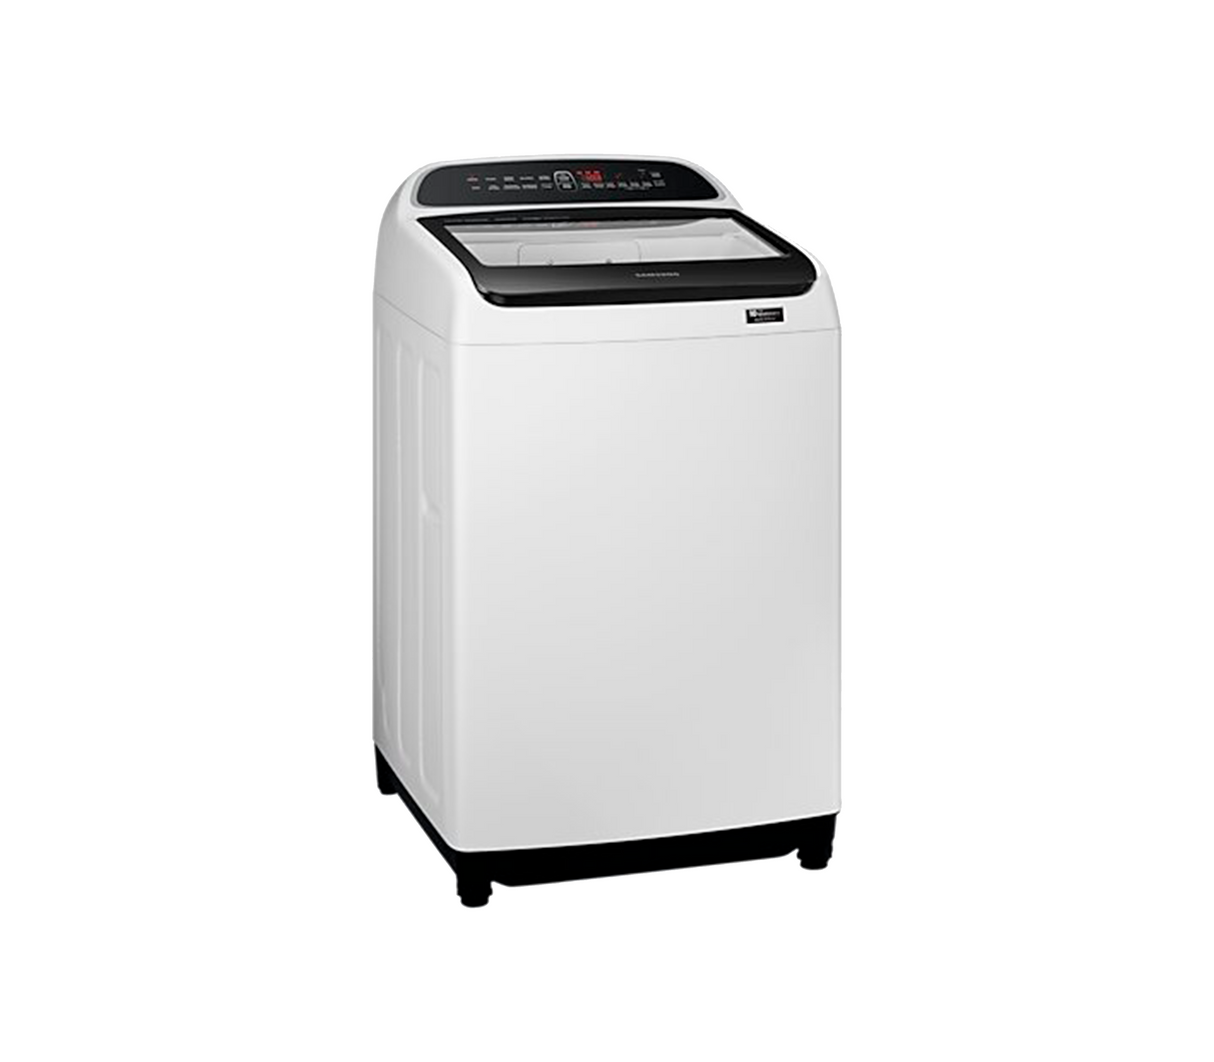 Lavadora automática carga superior 17 kg blanca/negra Samsumg